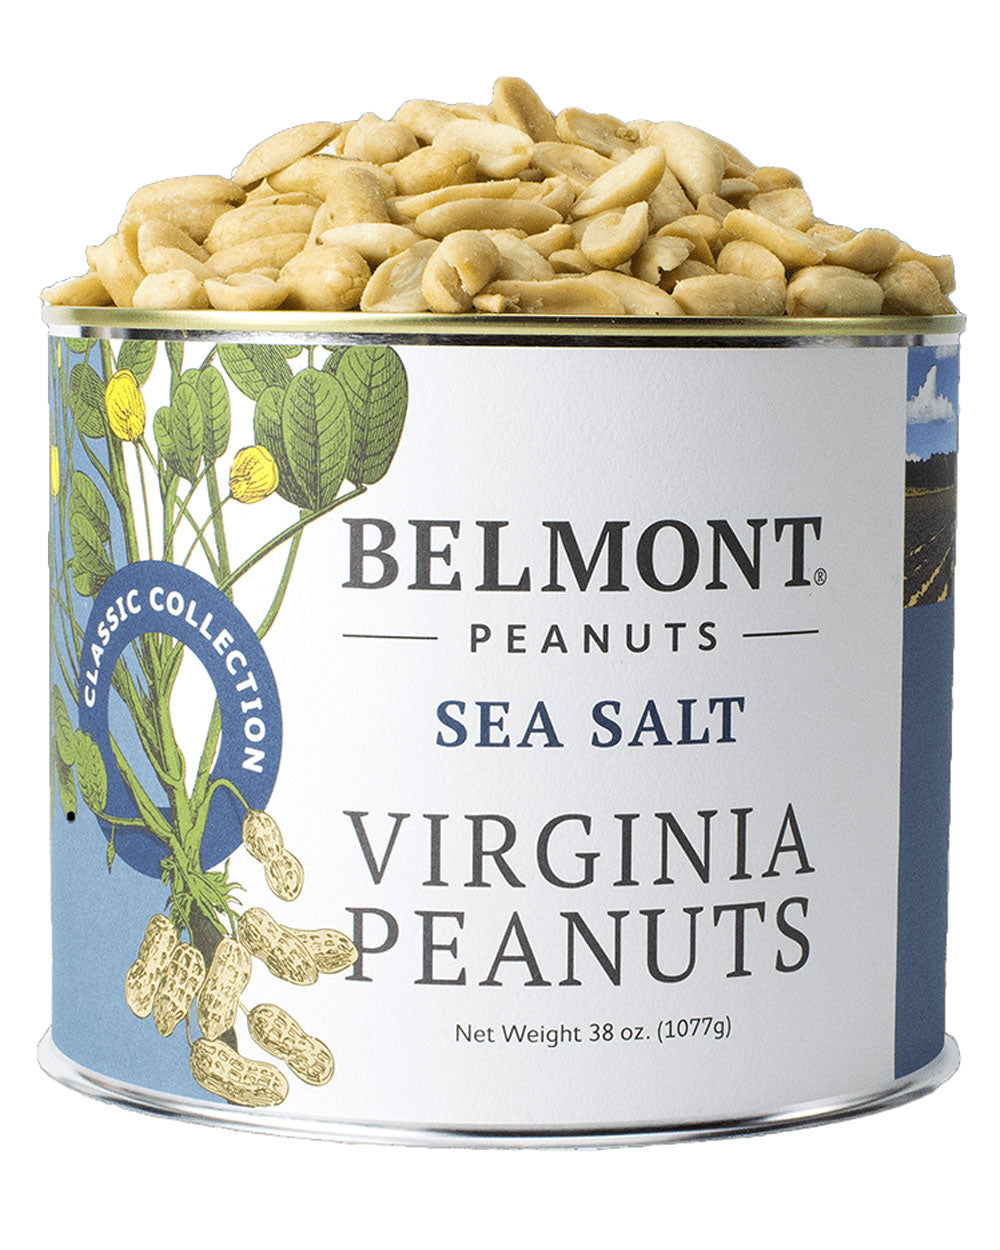 Sea Salt Virginia Peanuts 38oz